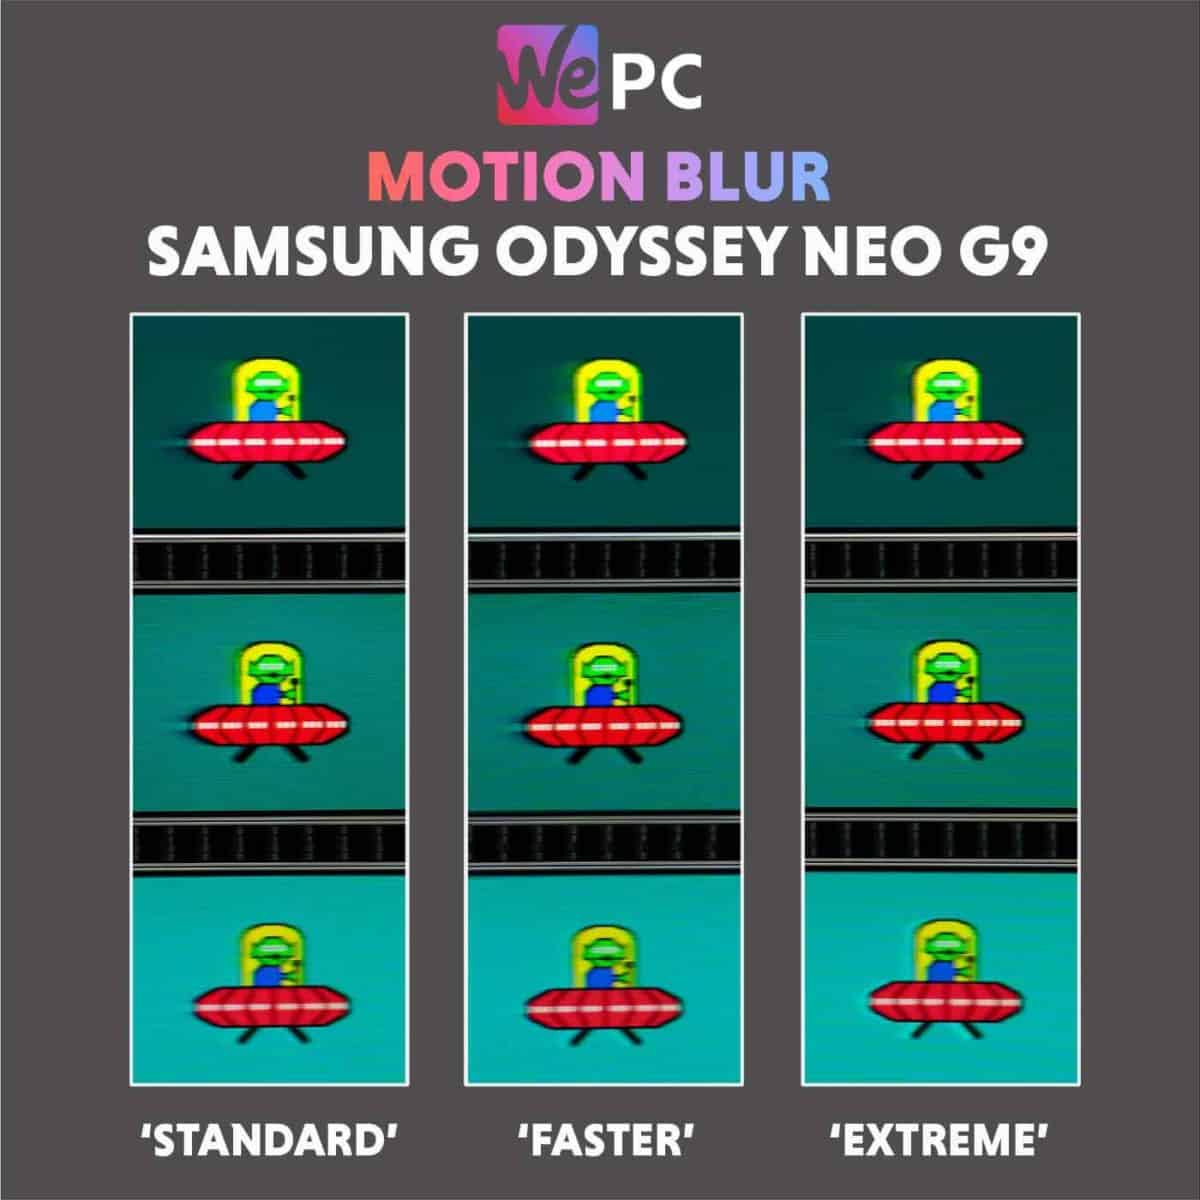 Samsung Odyssey Neo G9 Motion Blur Comparison